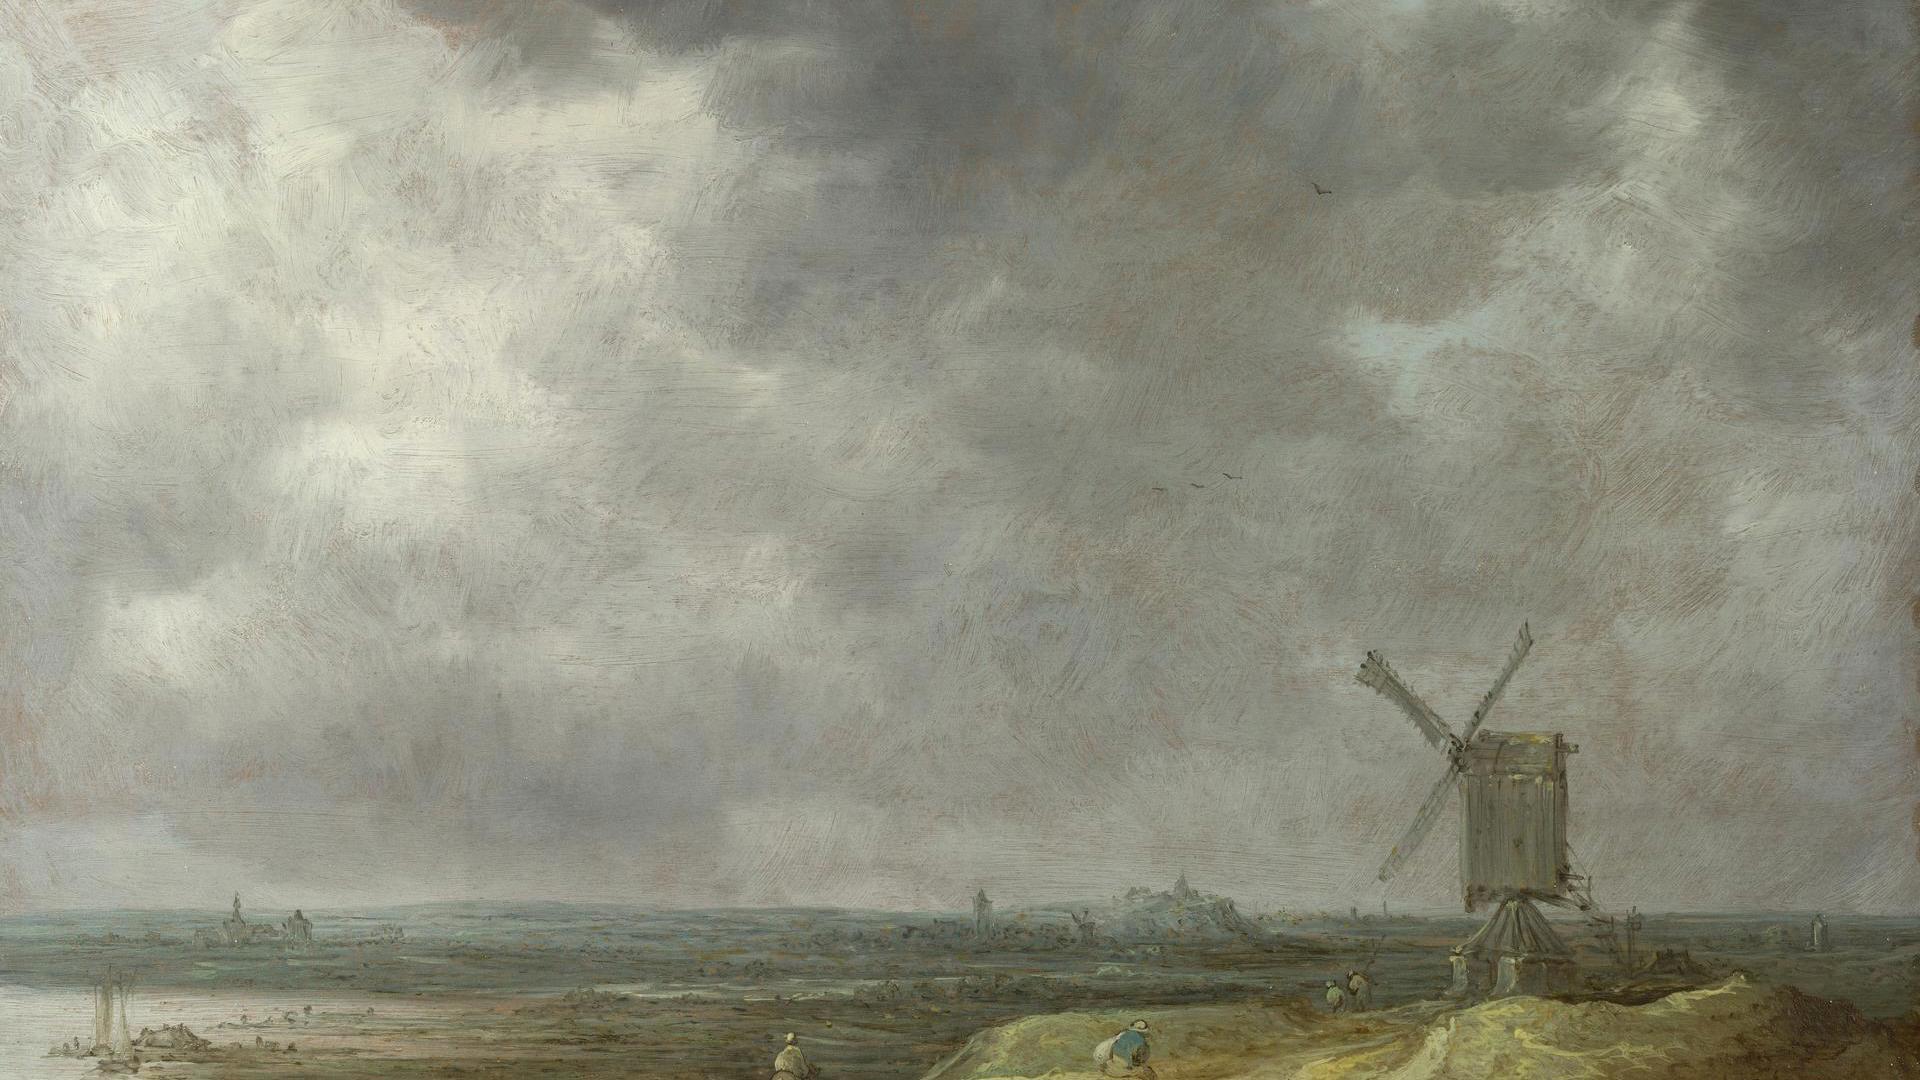 A Windmill by a River by Jan van Goyen